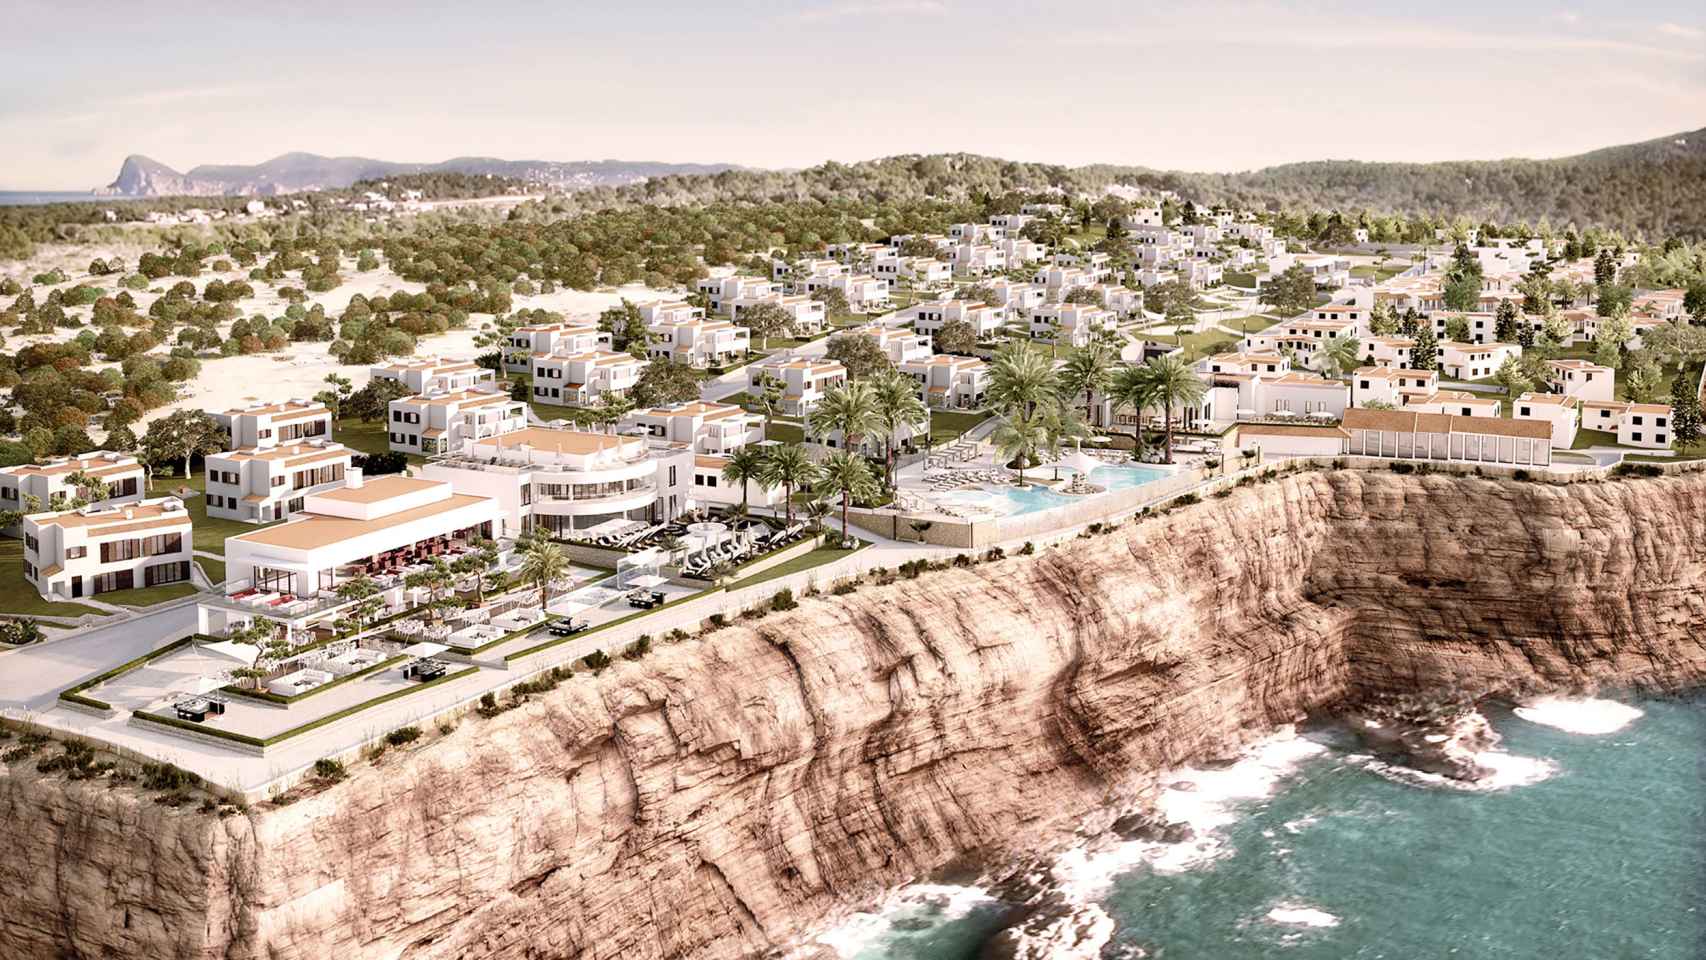 Vista aérea del complejo de Seven Pines en Ibiza.